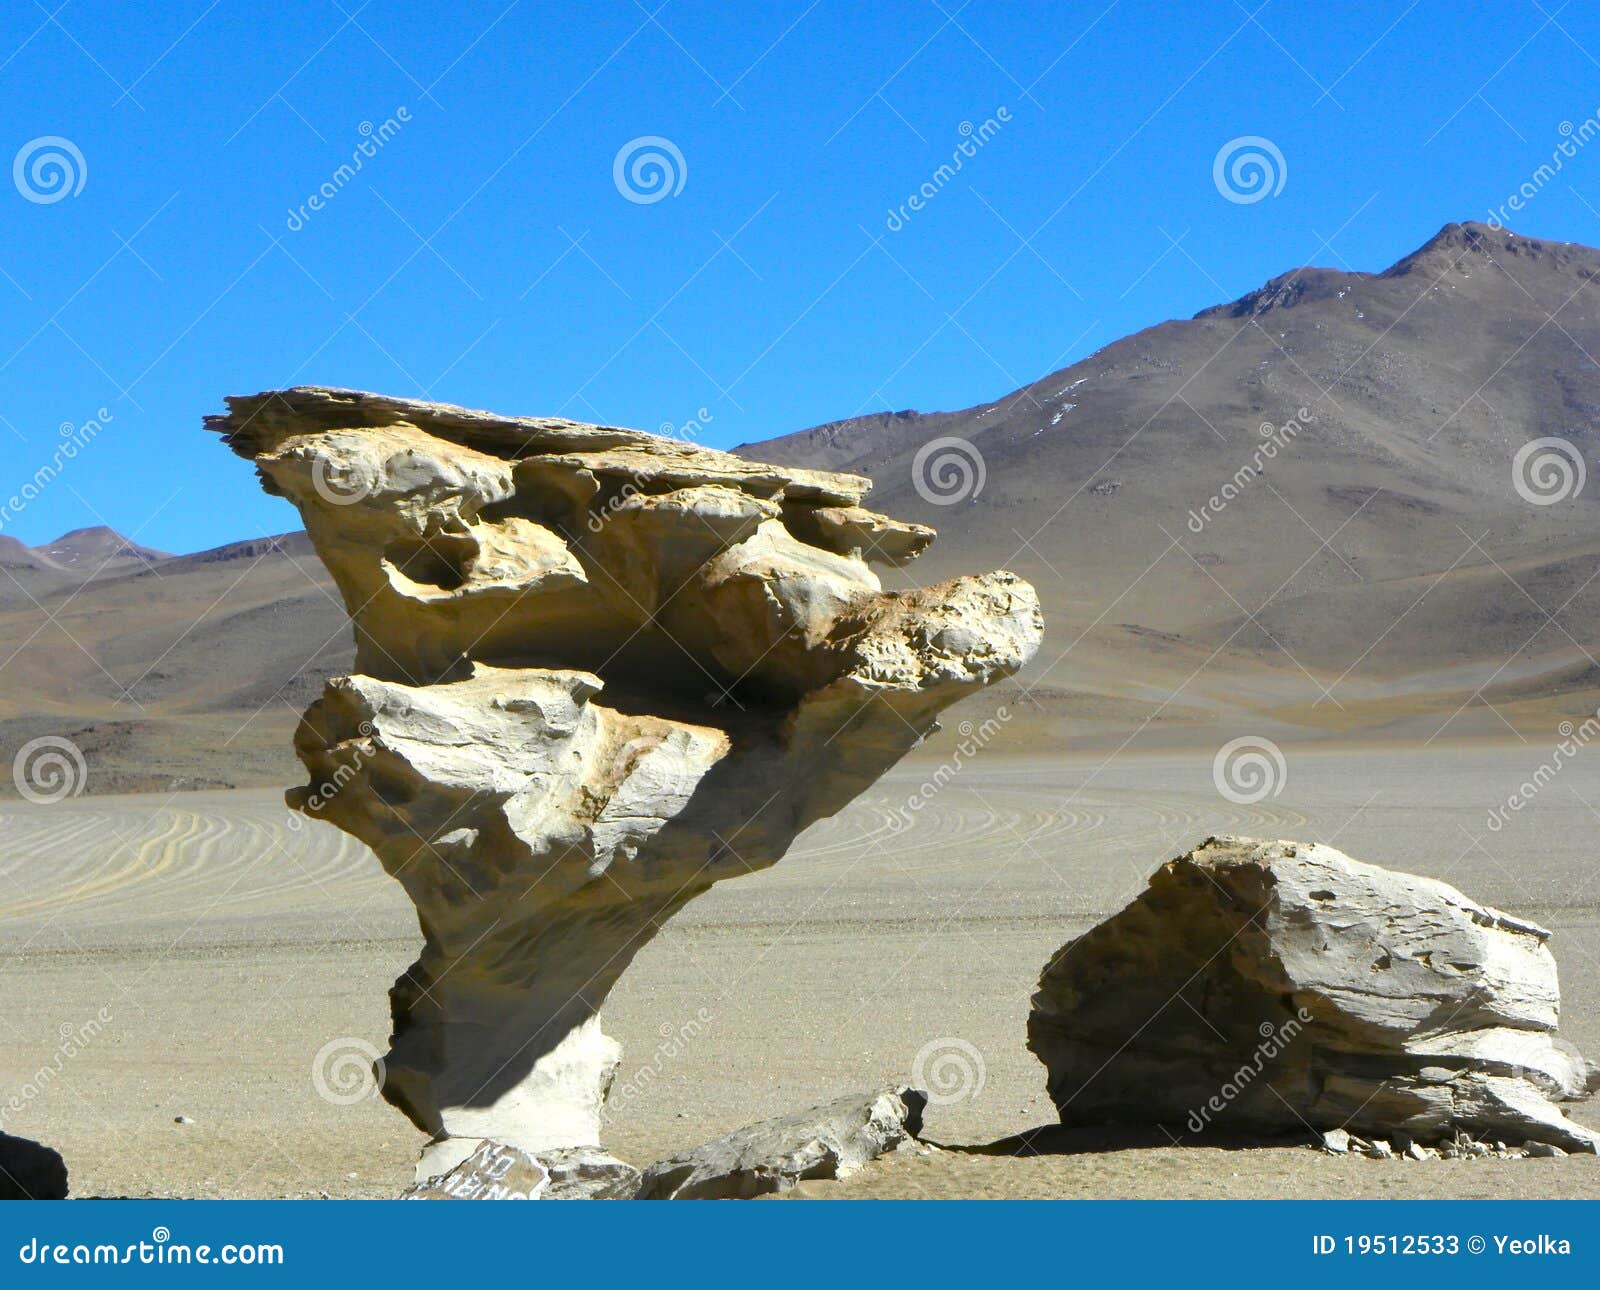 ÃÂrbol de piedra, altiplano, bolivia